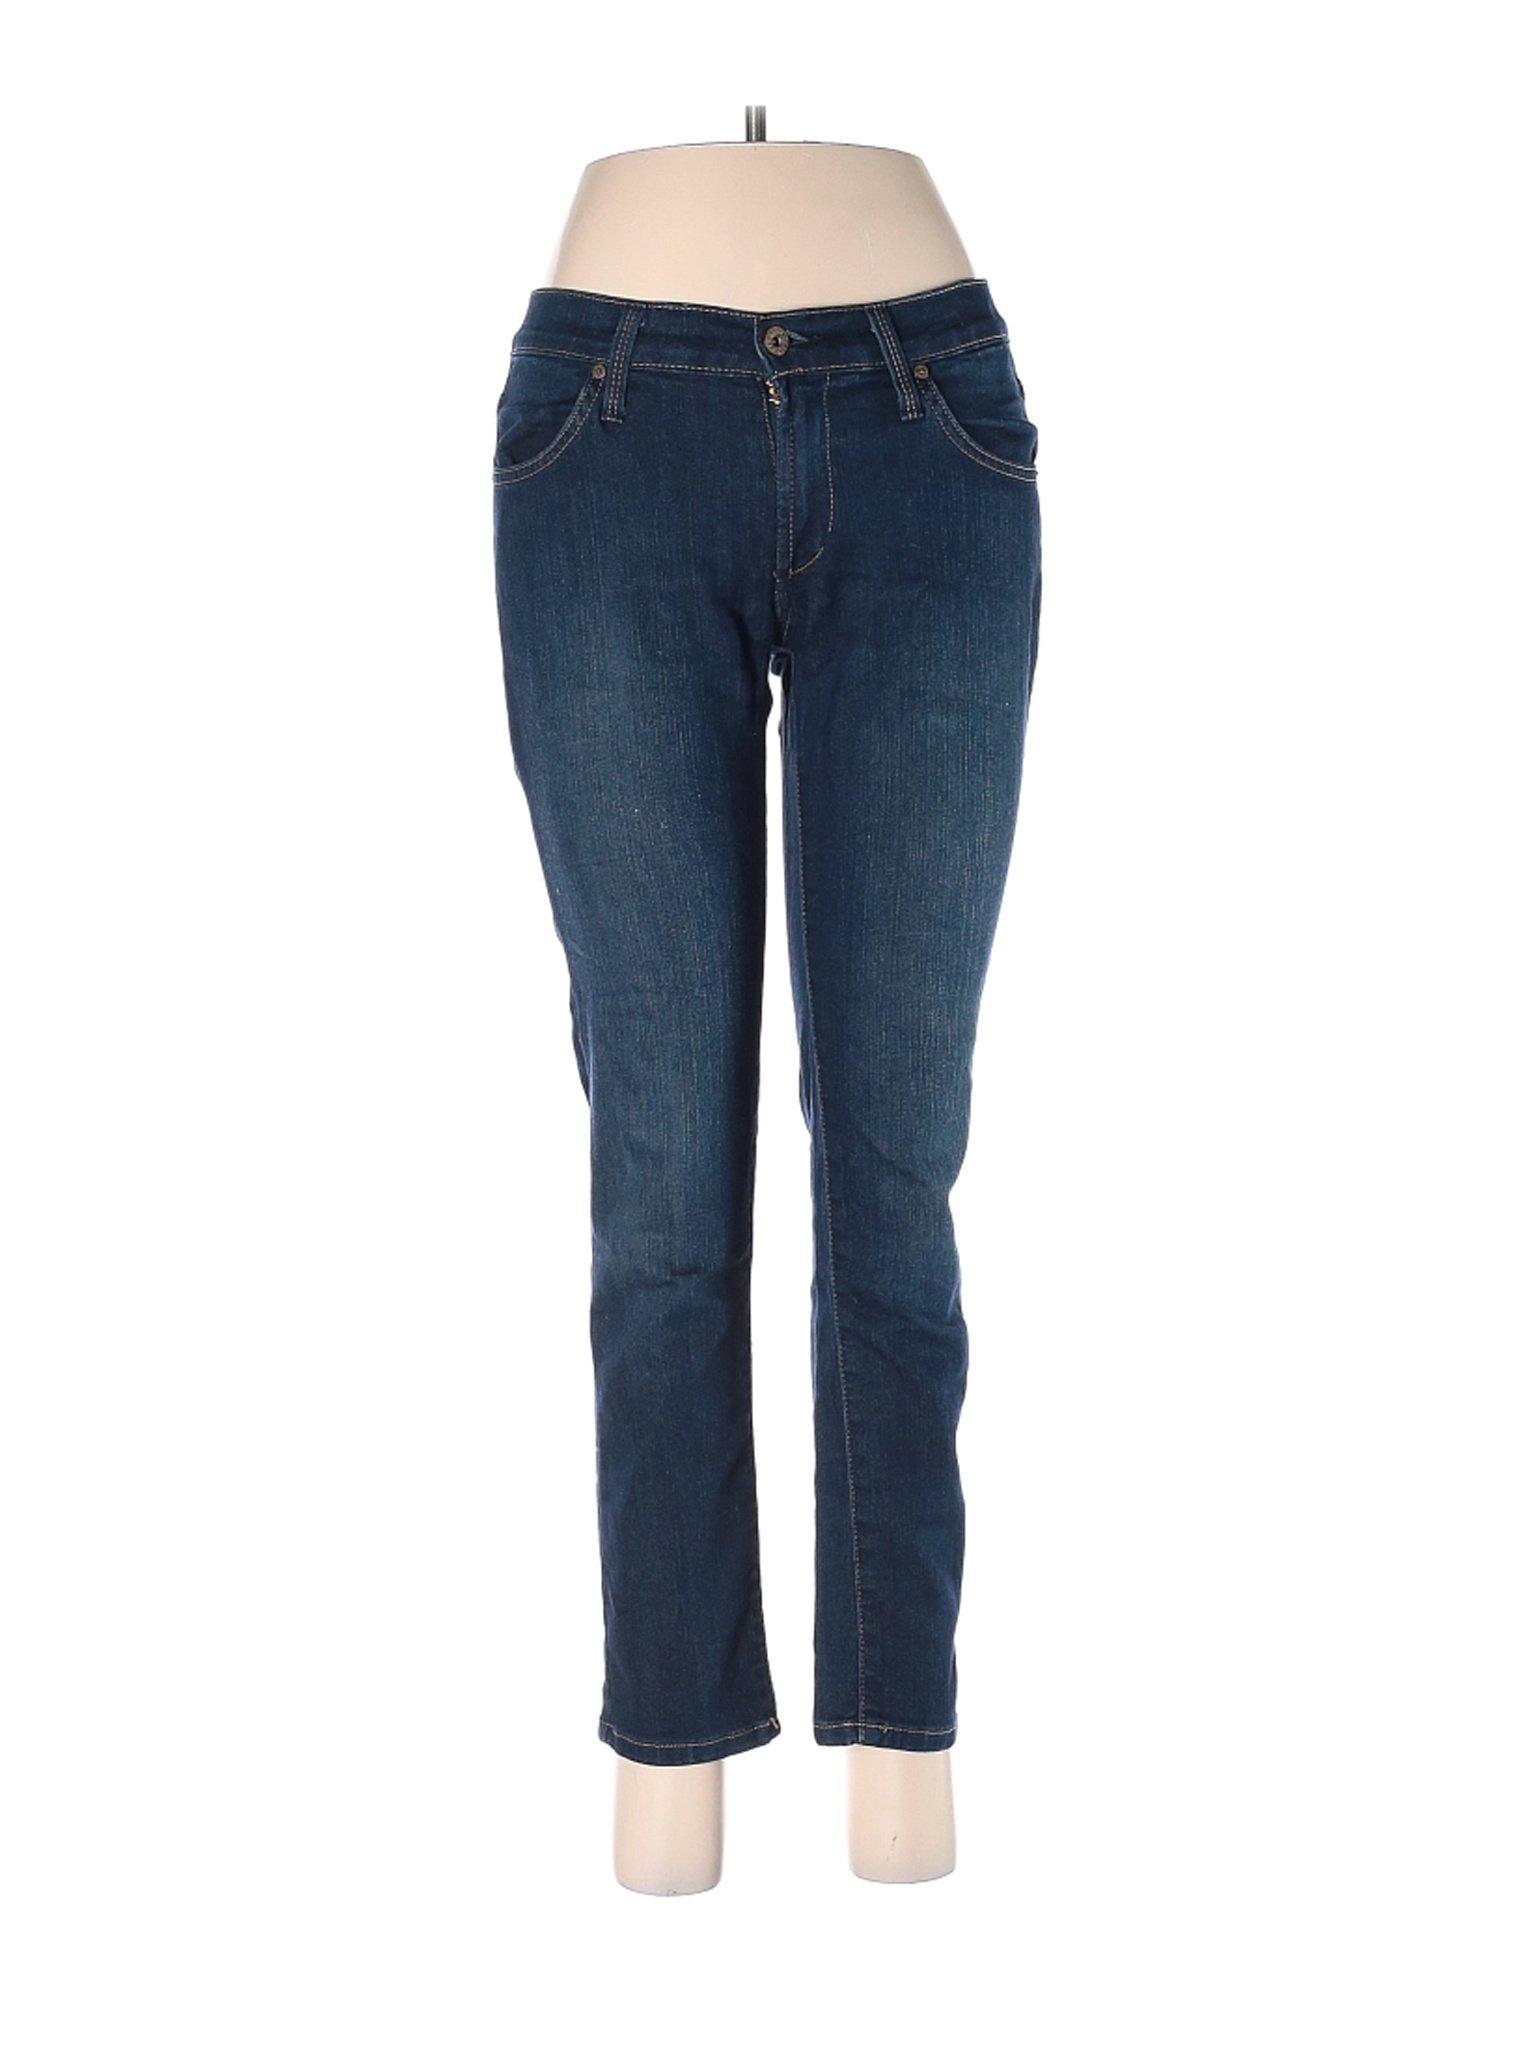 James Jeans Women Blue Jeans 28W | eBay